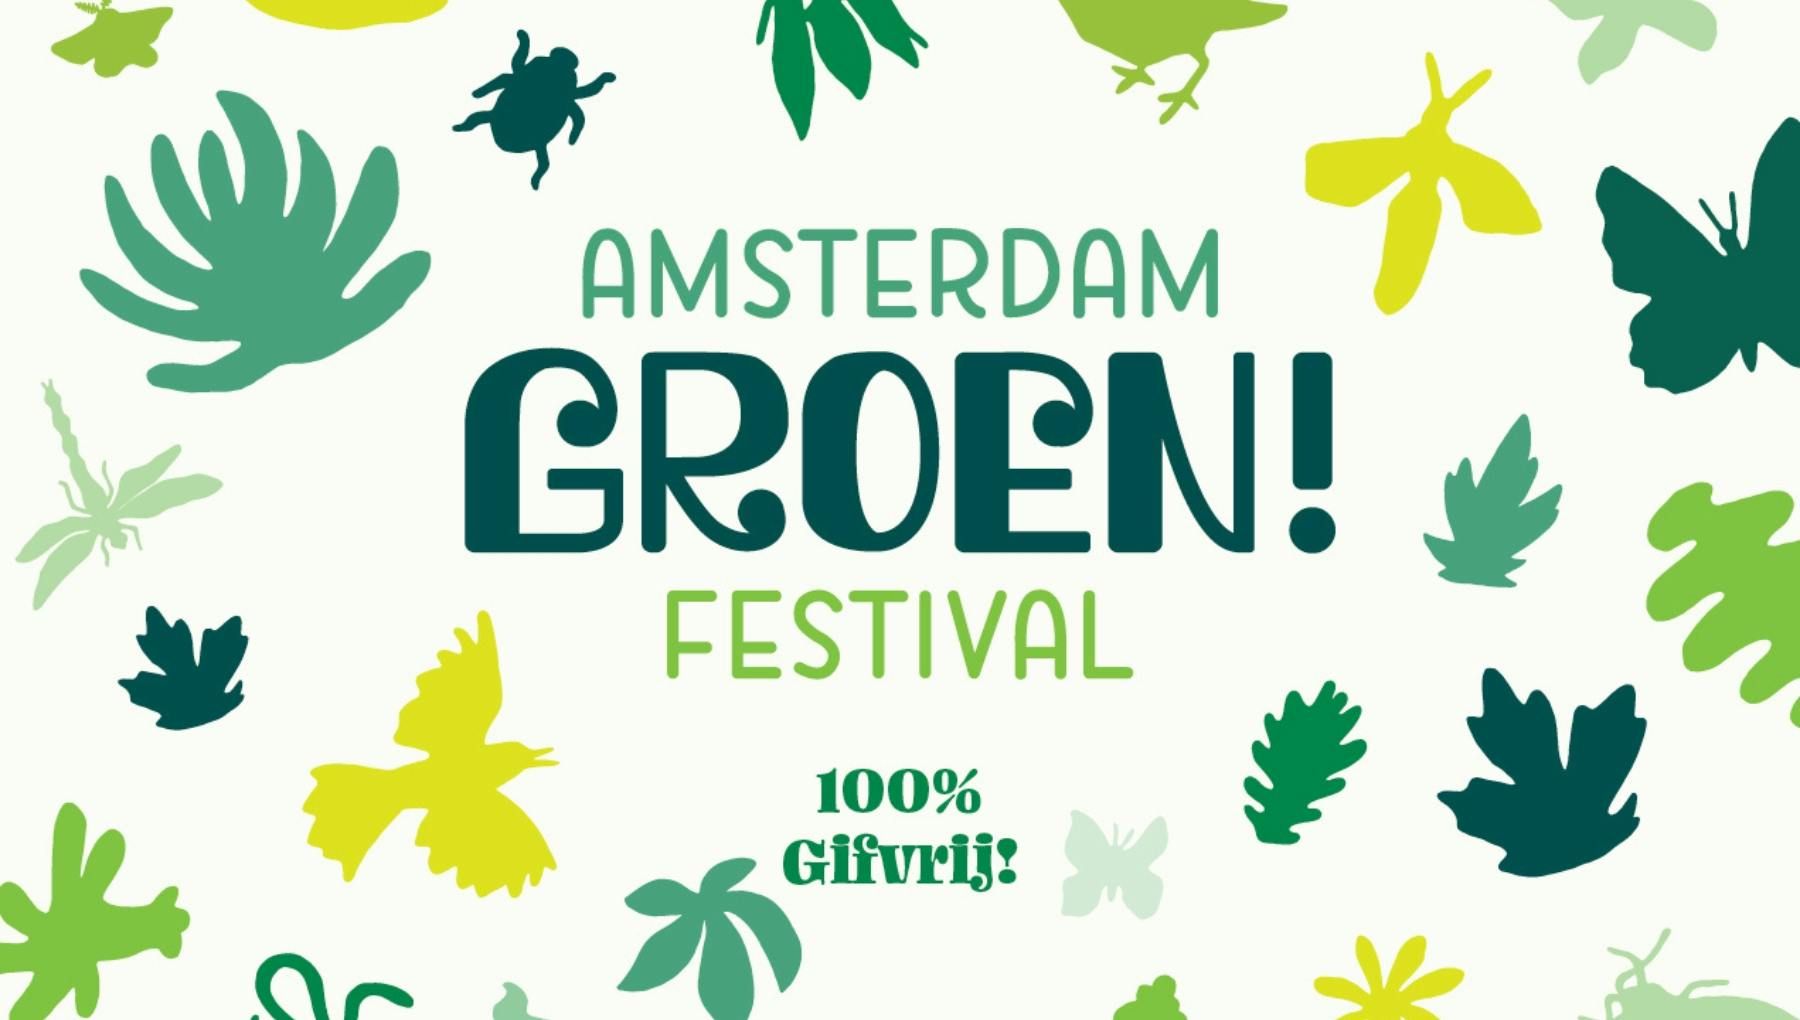 Amsterdam Green! Festival (100% Pesticide-Free!)